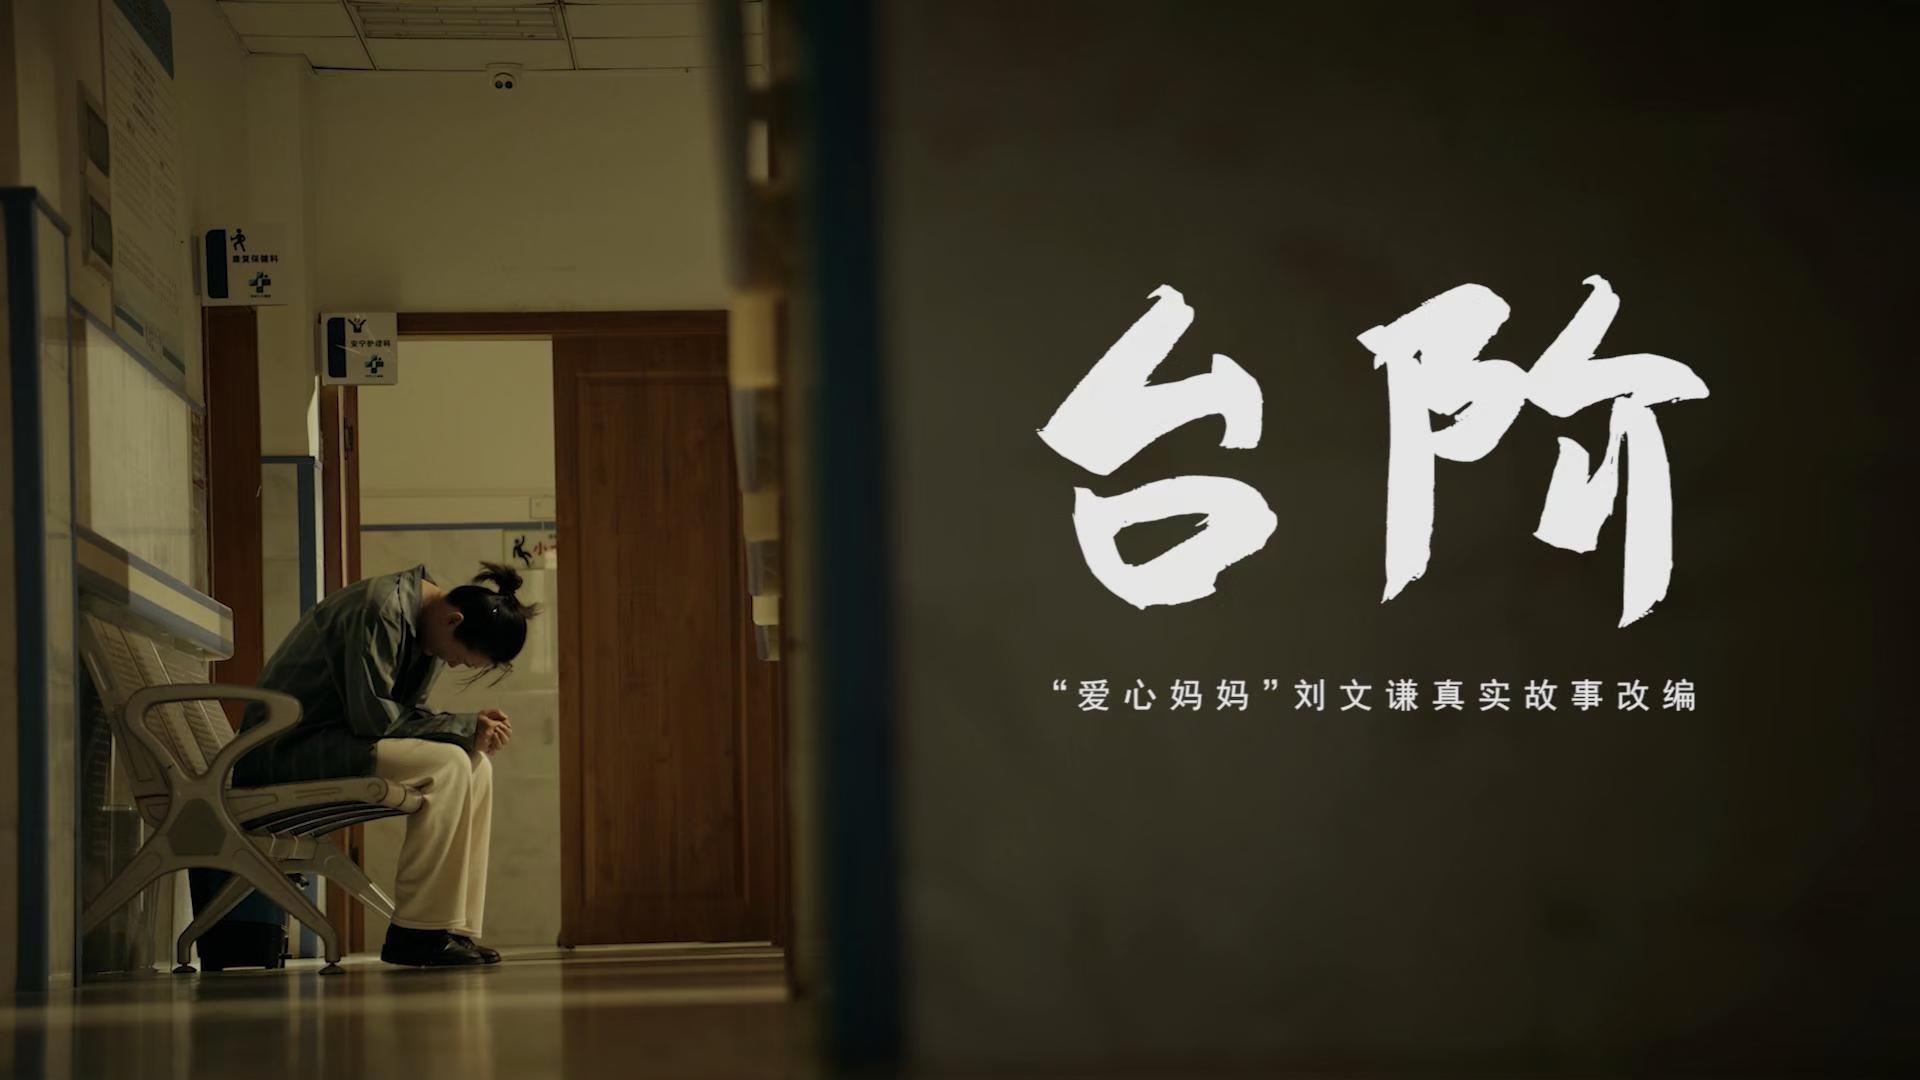 《台阶》丨贵州省首届社会主义核心价值观主题微电影(微视频)征集展示活动作品